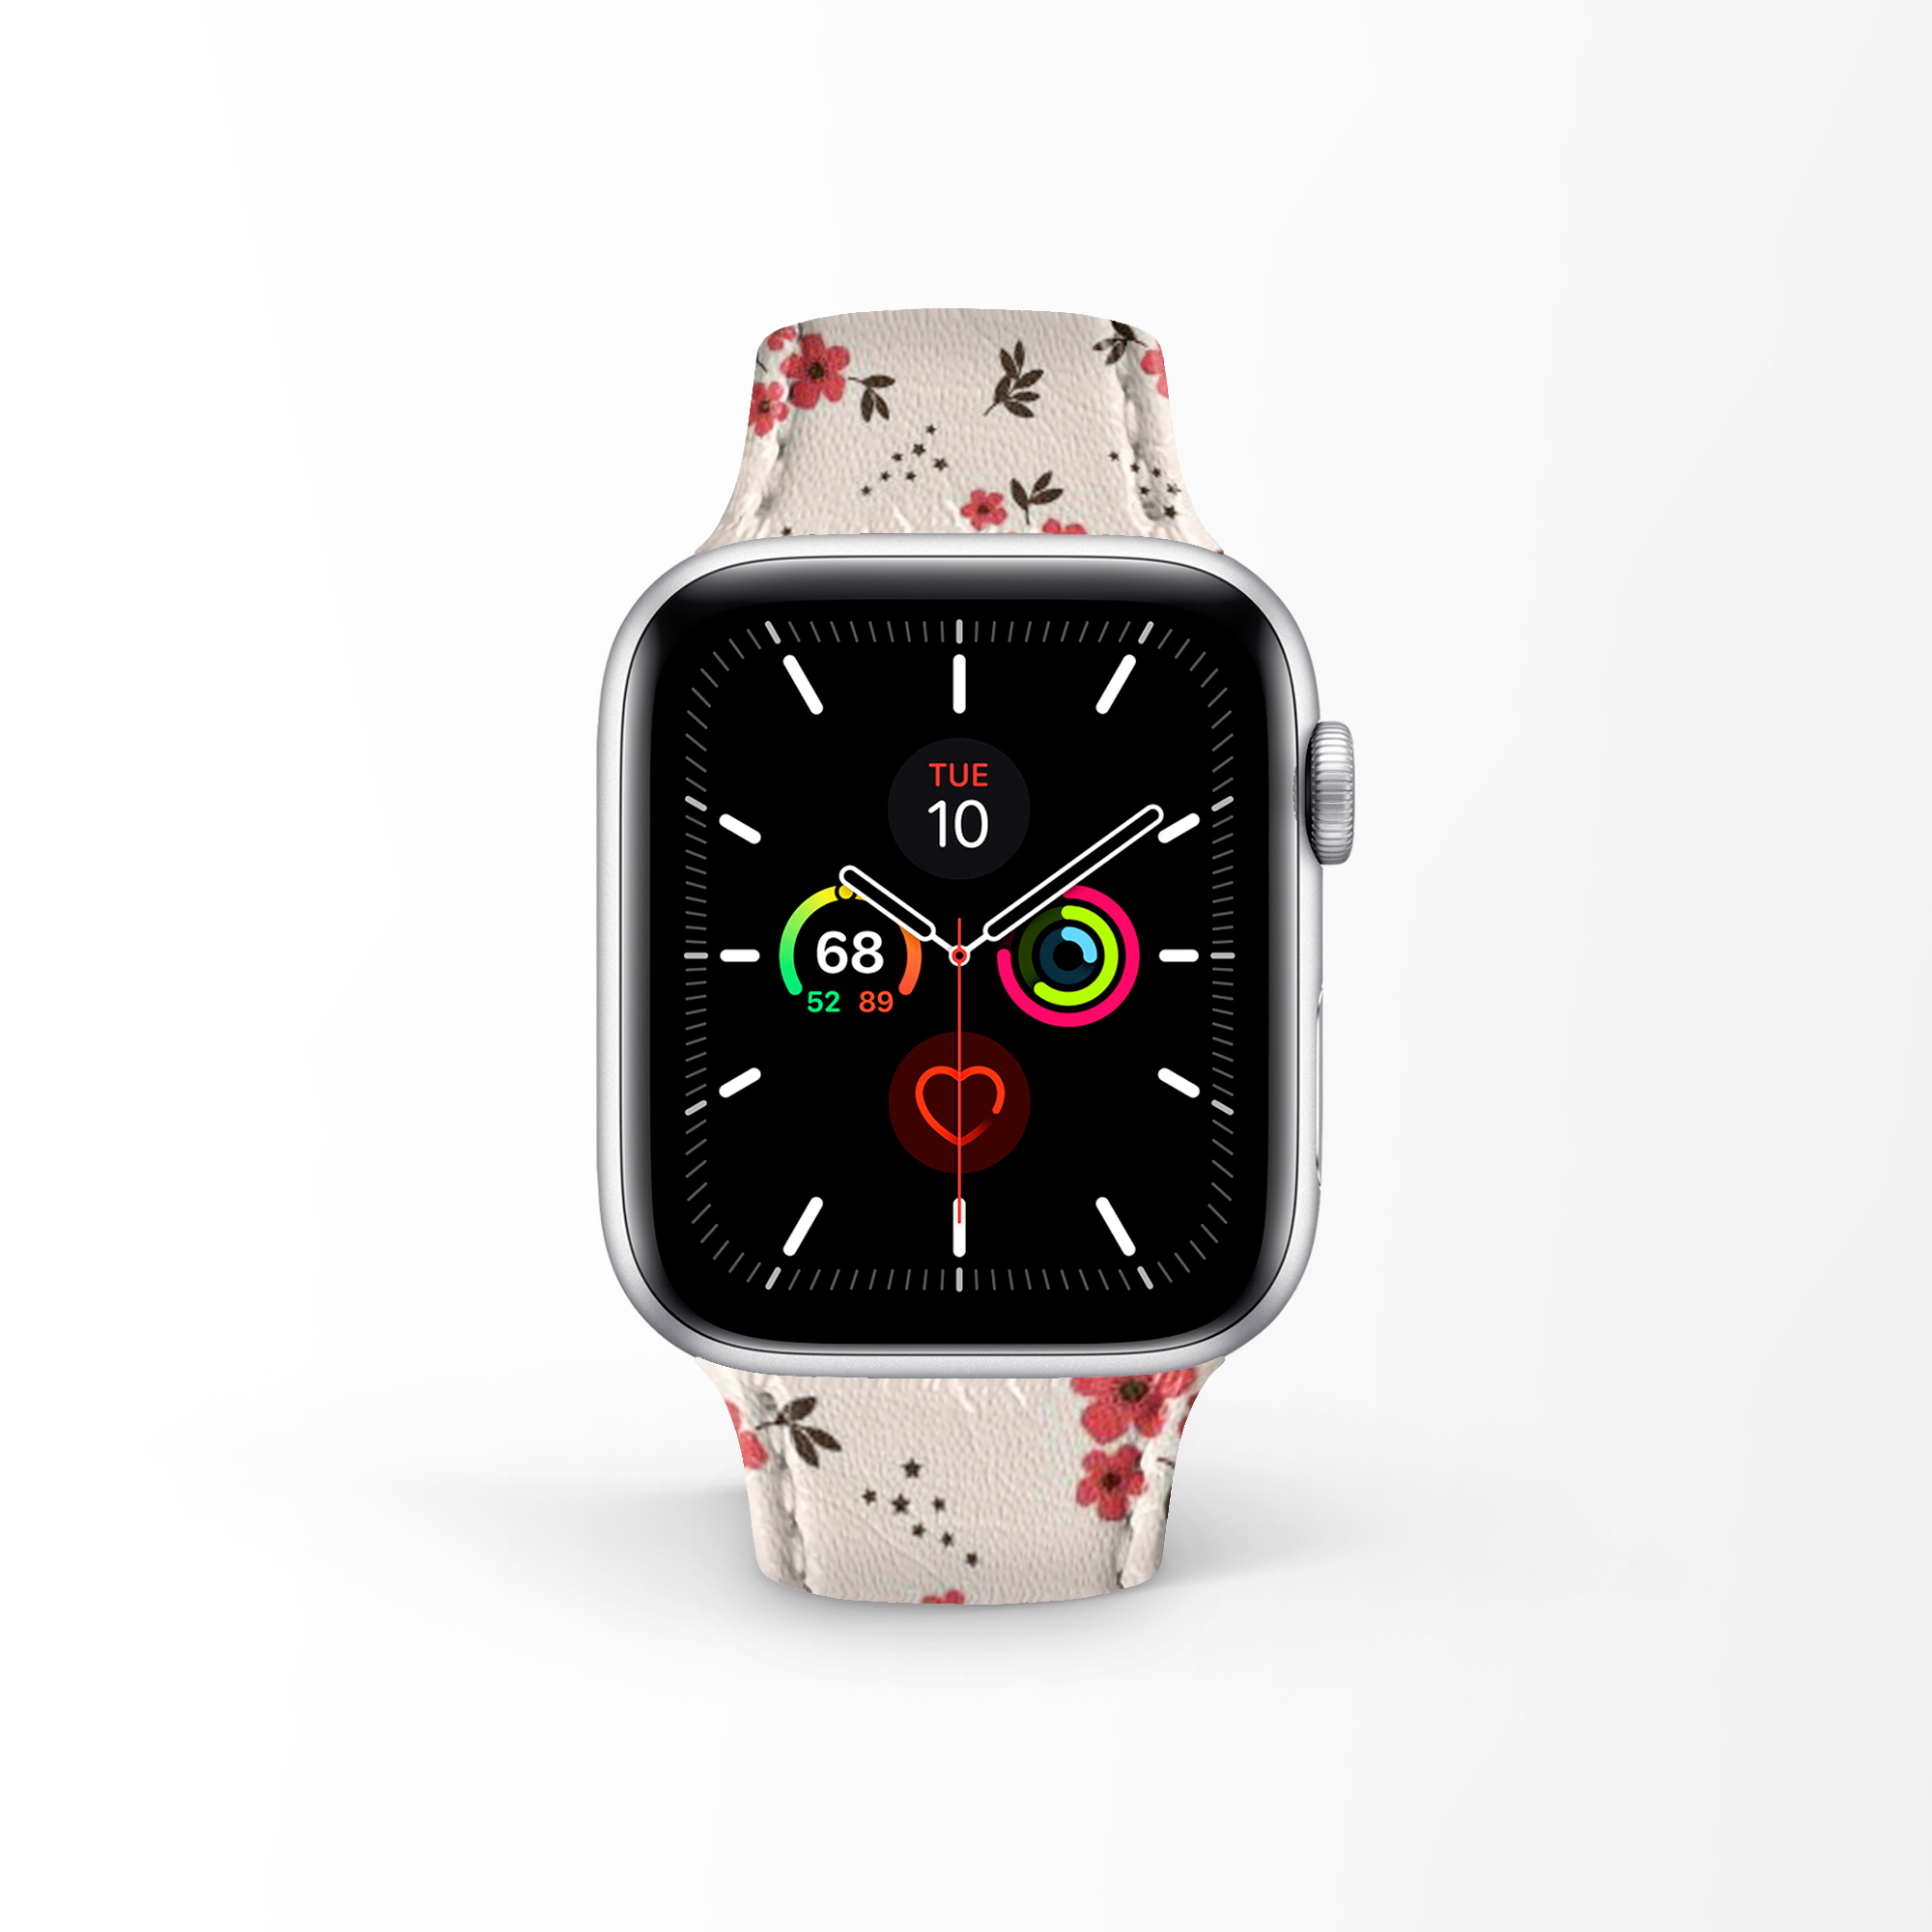 Apple Watch Premium Leather Strap Flower Series Design 04